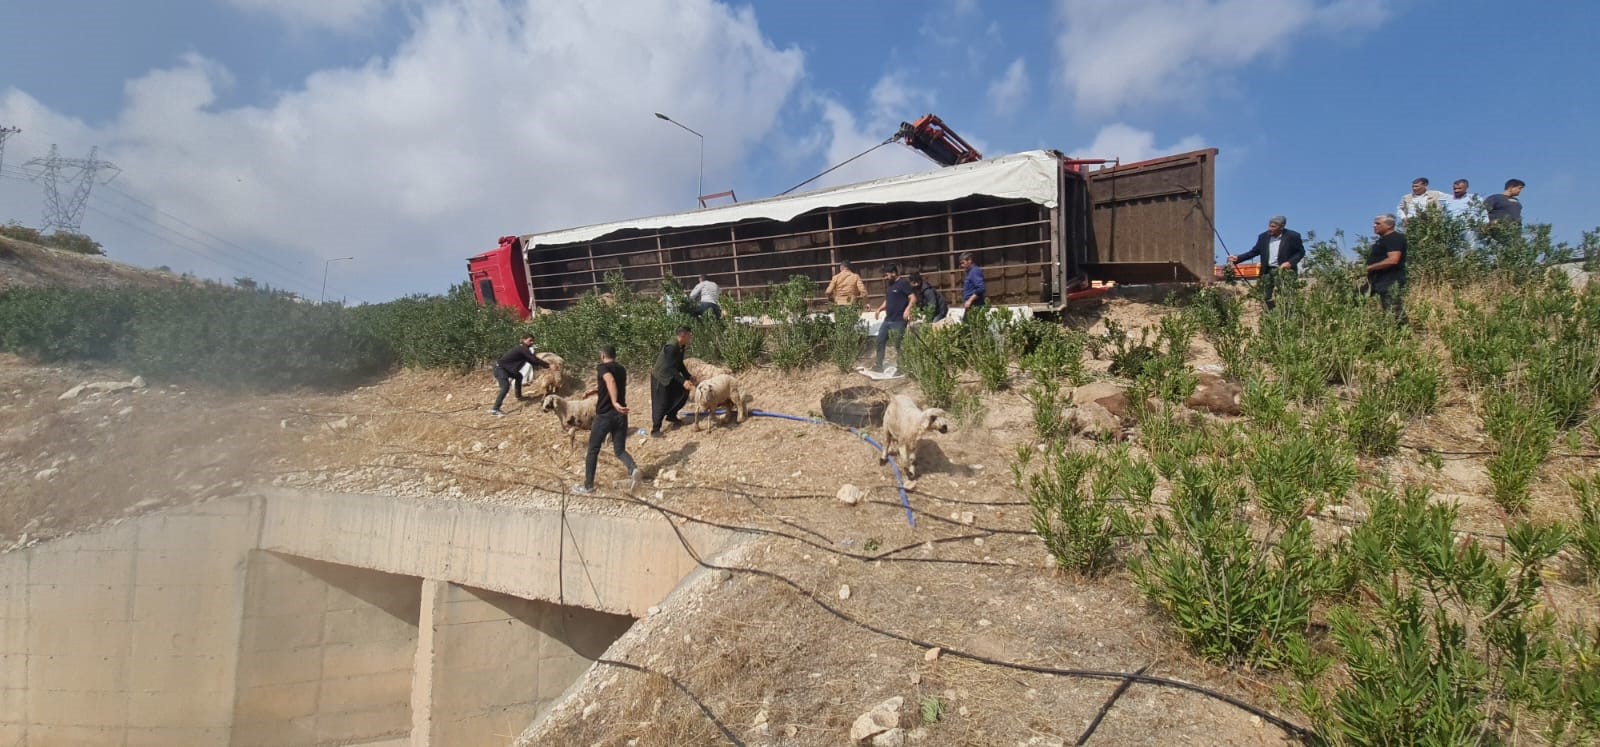 Gaziantep- Şanlıurfa karayolunda koyun yüklü tır devrildi: Sürücü yaralandı, 80 koyun telef oldu